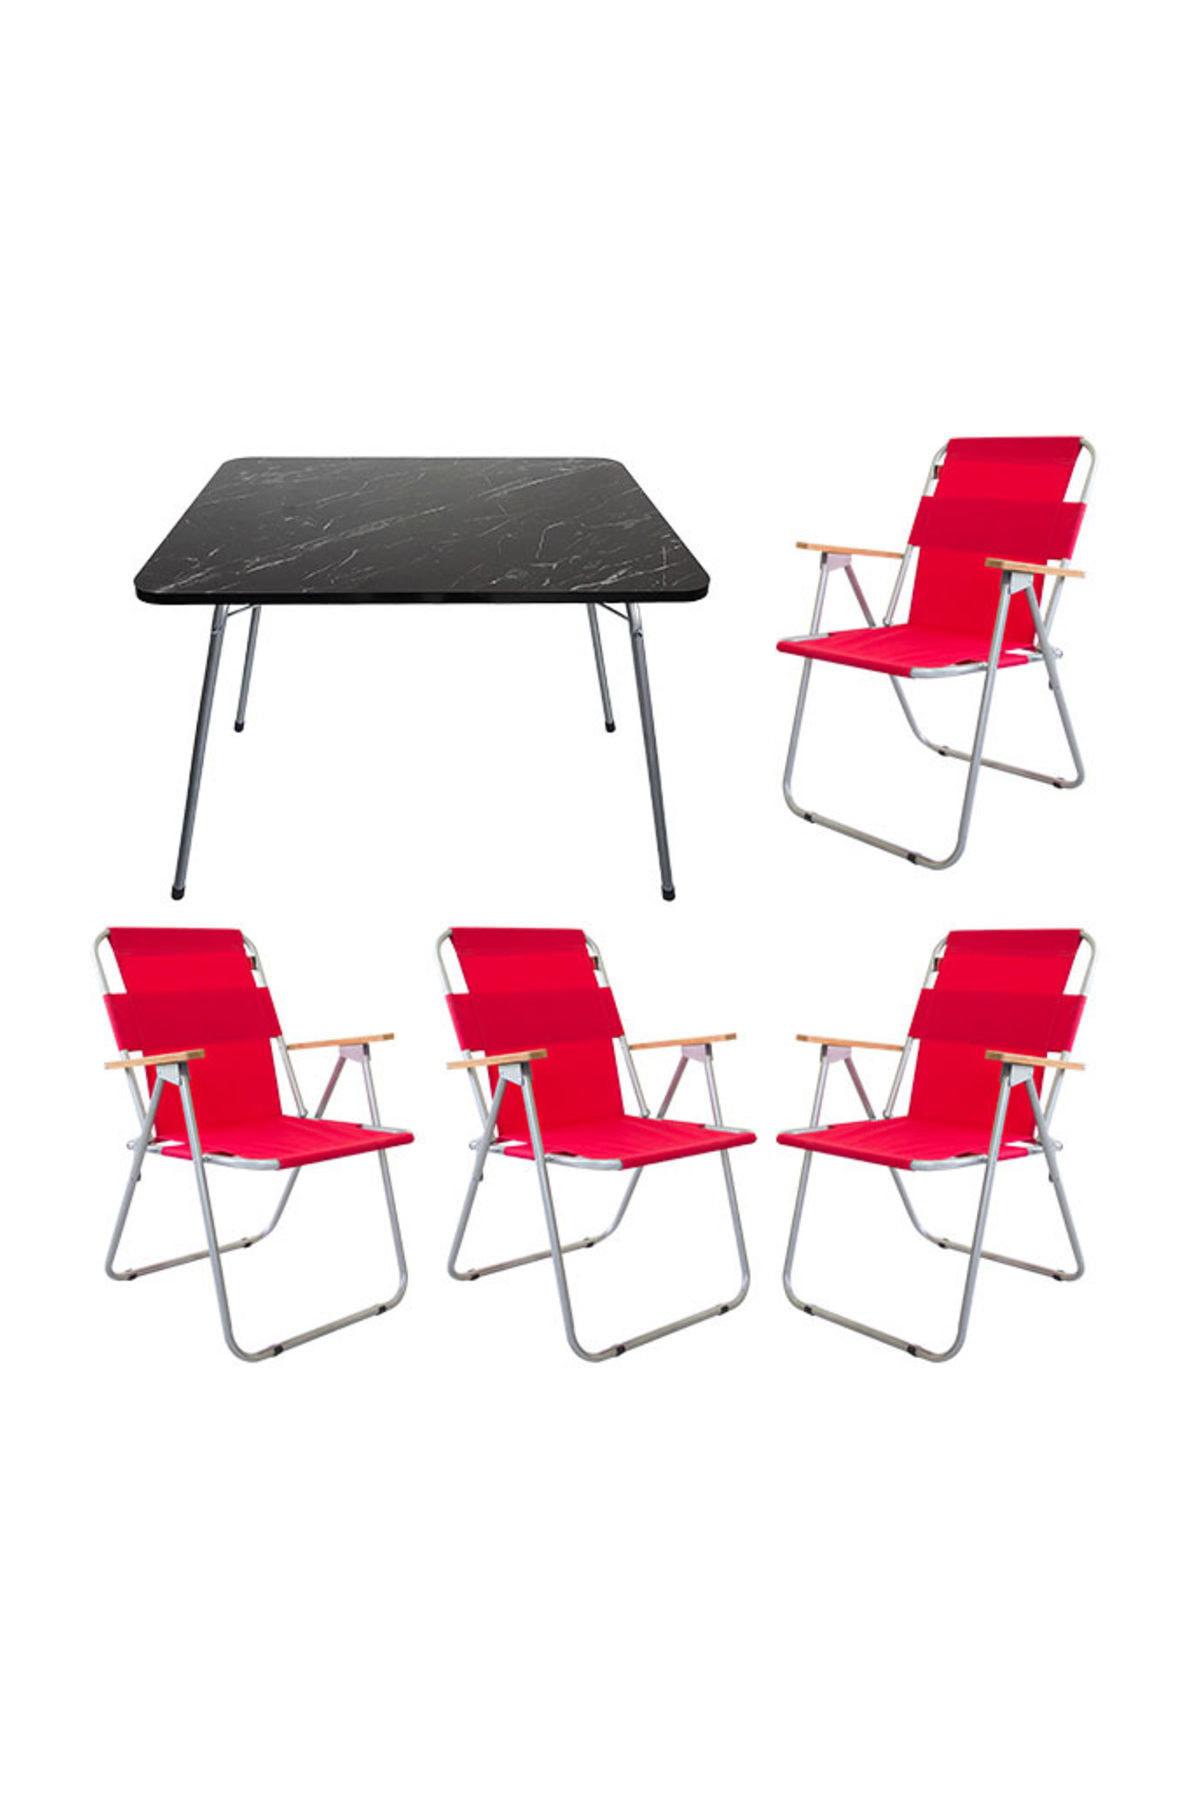 Bofigo 60 x 80 cm Tabureli Çantalı Dikdörtgen Granit Katlanır Kamp Masası Kırmızı + 4 Adet Katlanır Sandalye